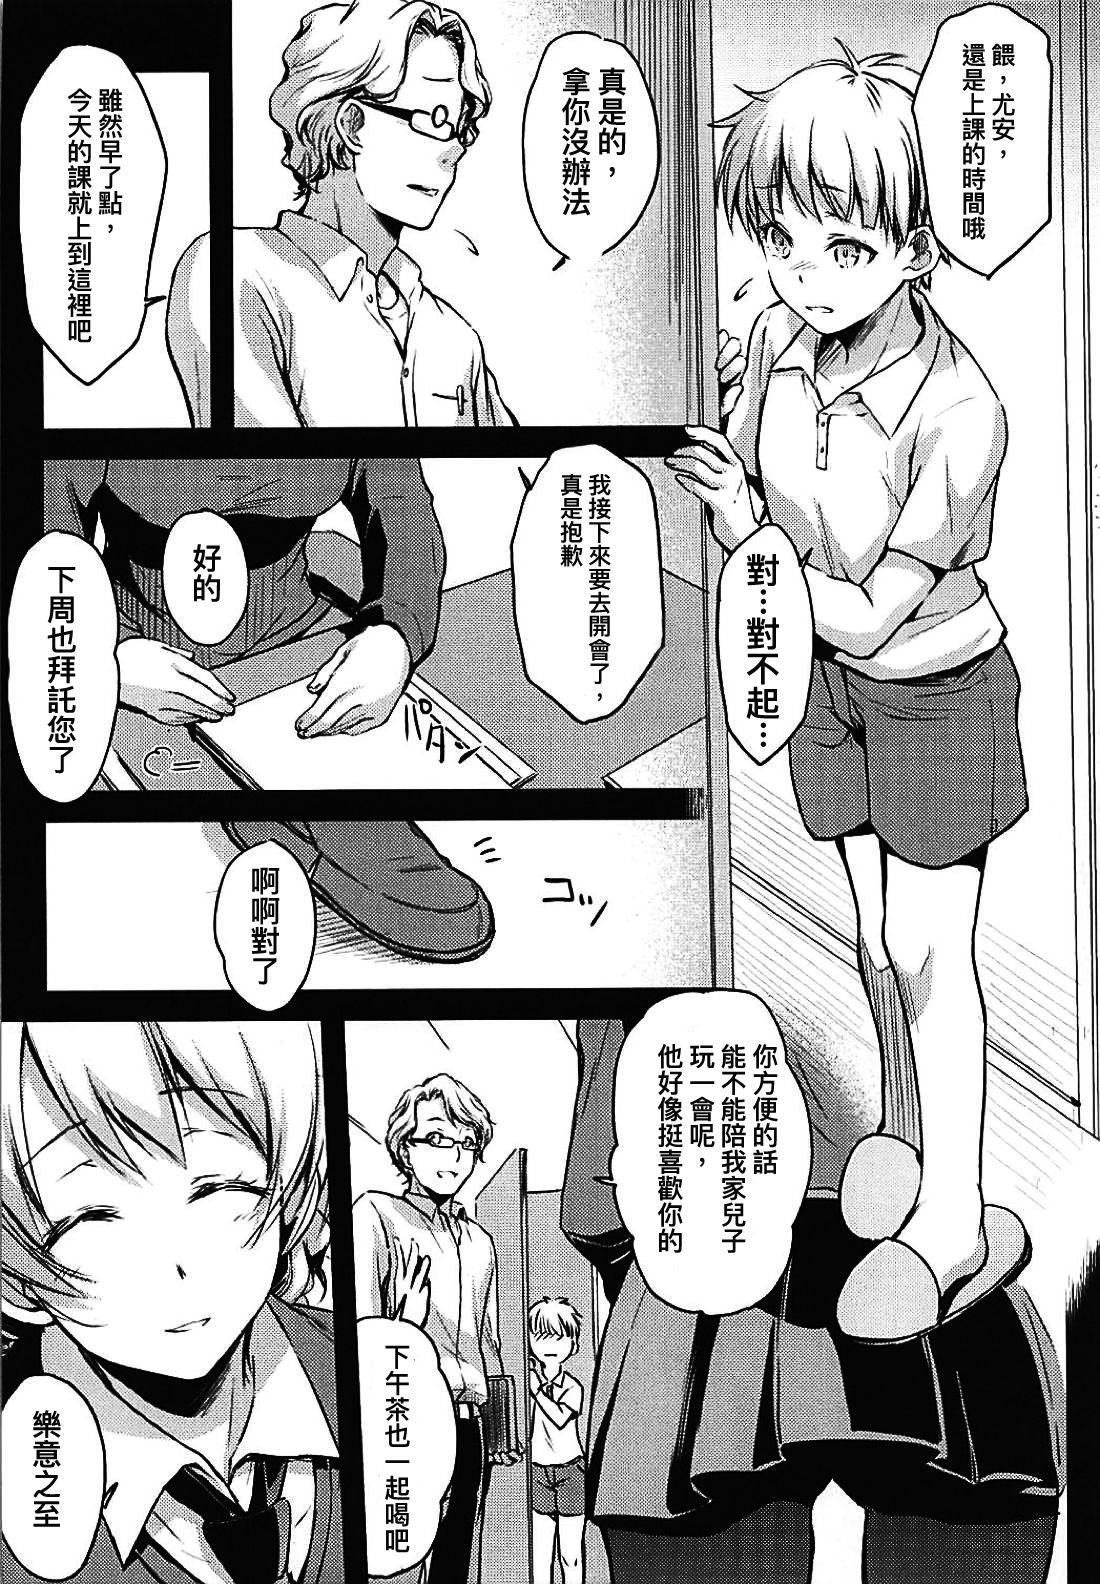 This Shukujo no Tashinami - Girls und panzer Coeds - Page 4